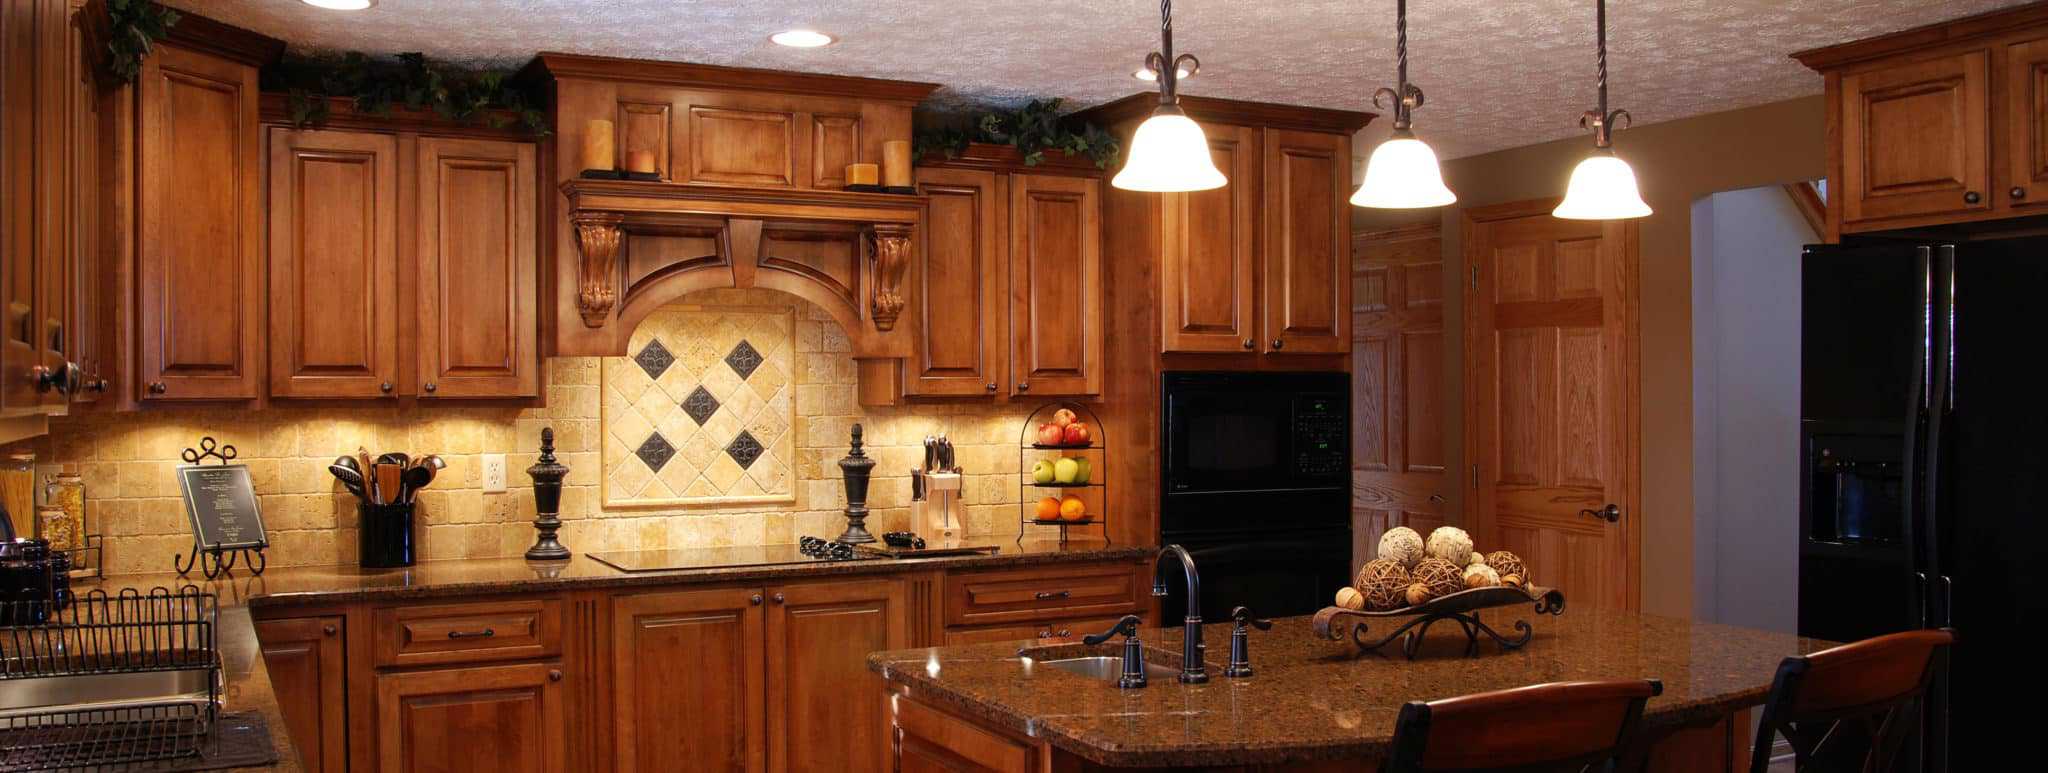 best kitchen cabinets